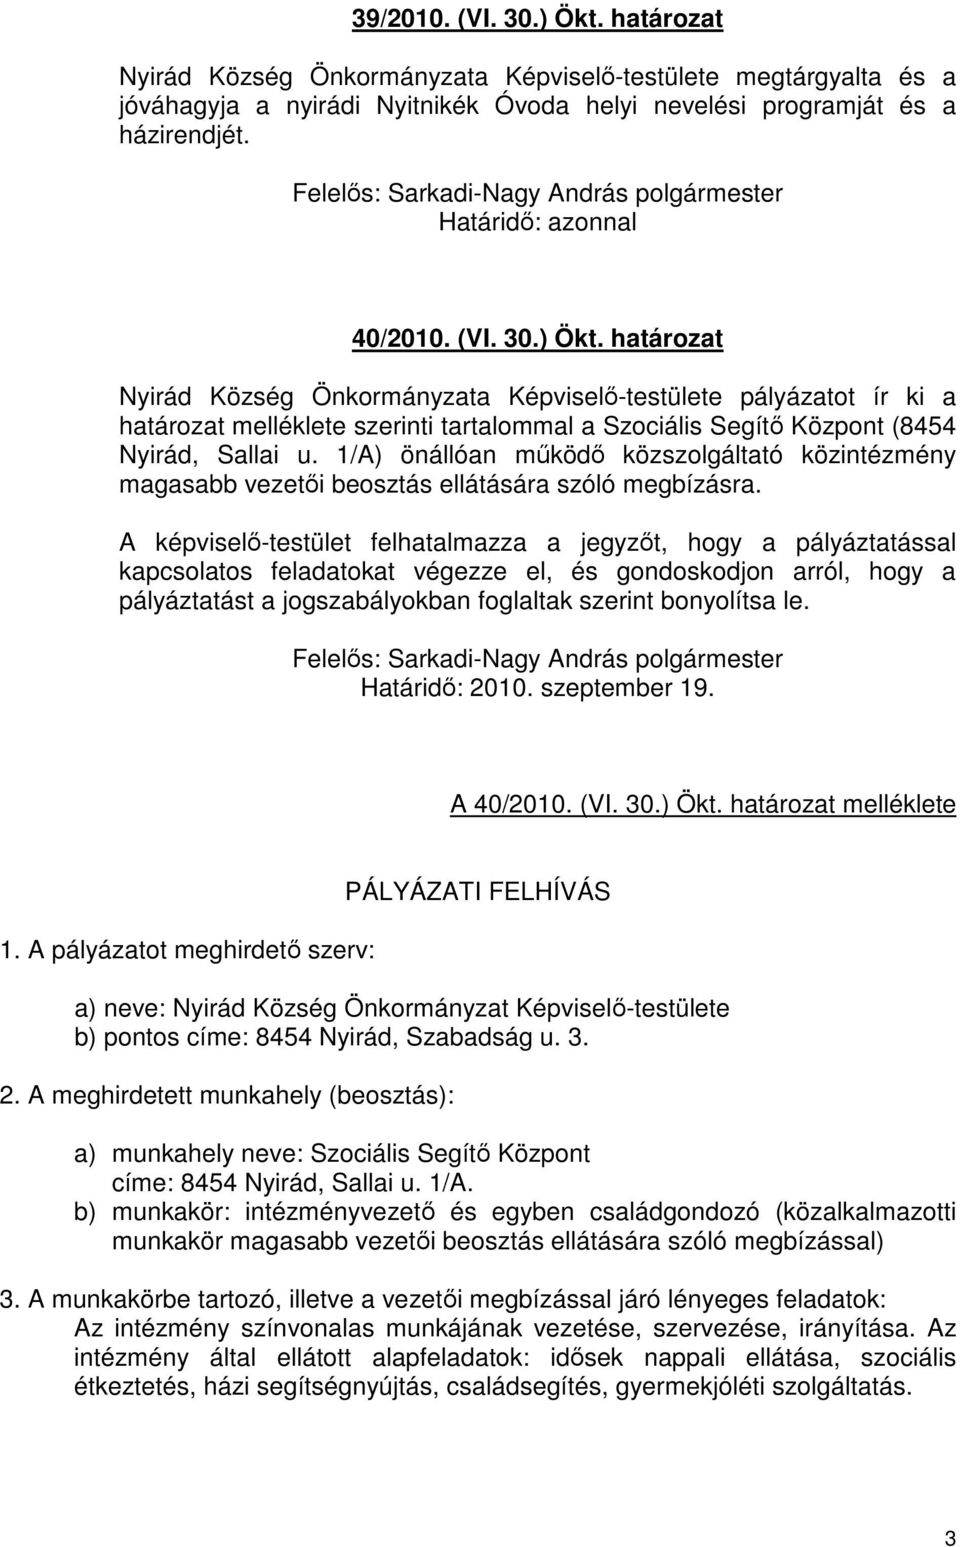 A képviselı-testület felhatalmazza a jegyzıt, hogy a pályáztatással kapcsolatos feladatokat végezze el, és gondoskodjon arról, hogy a pályáztatást a jogszabályokban foglaltak szerint bonyolítsa le.